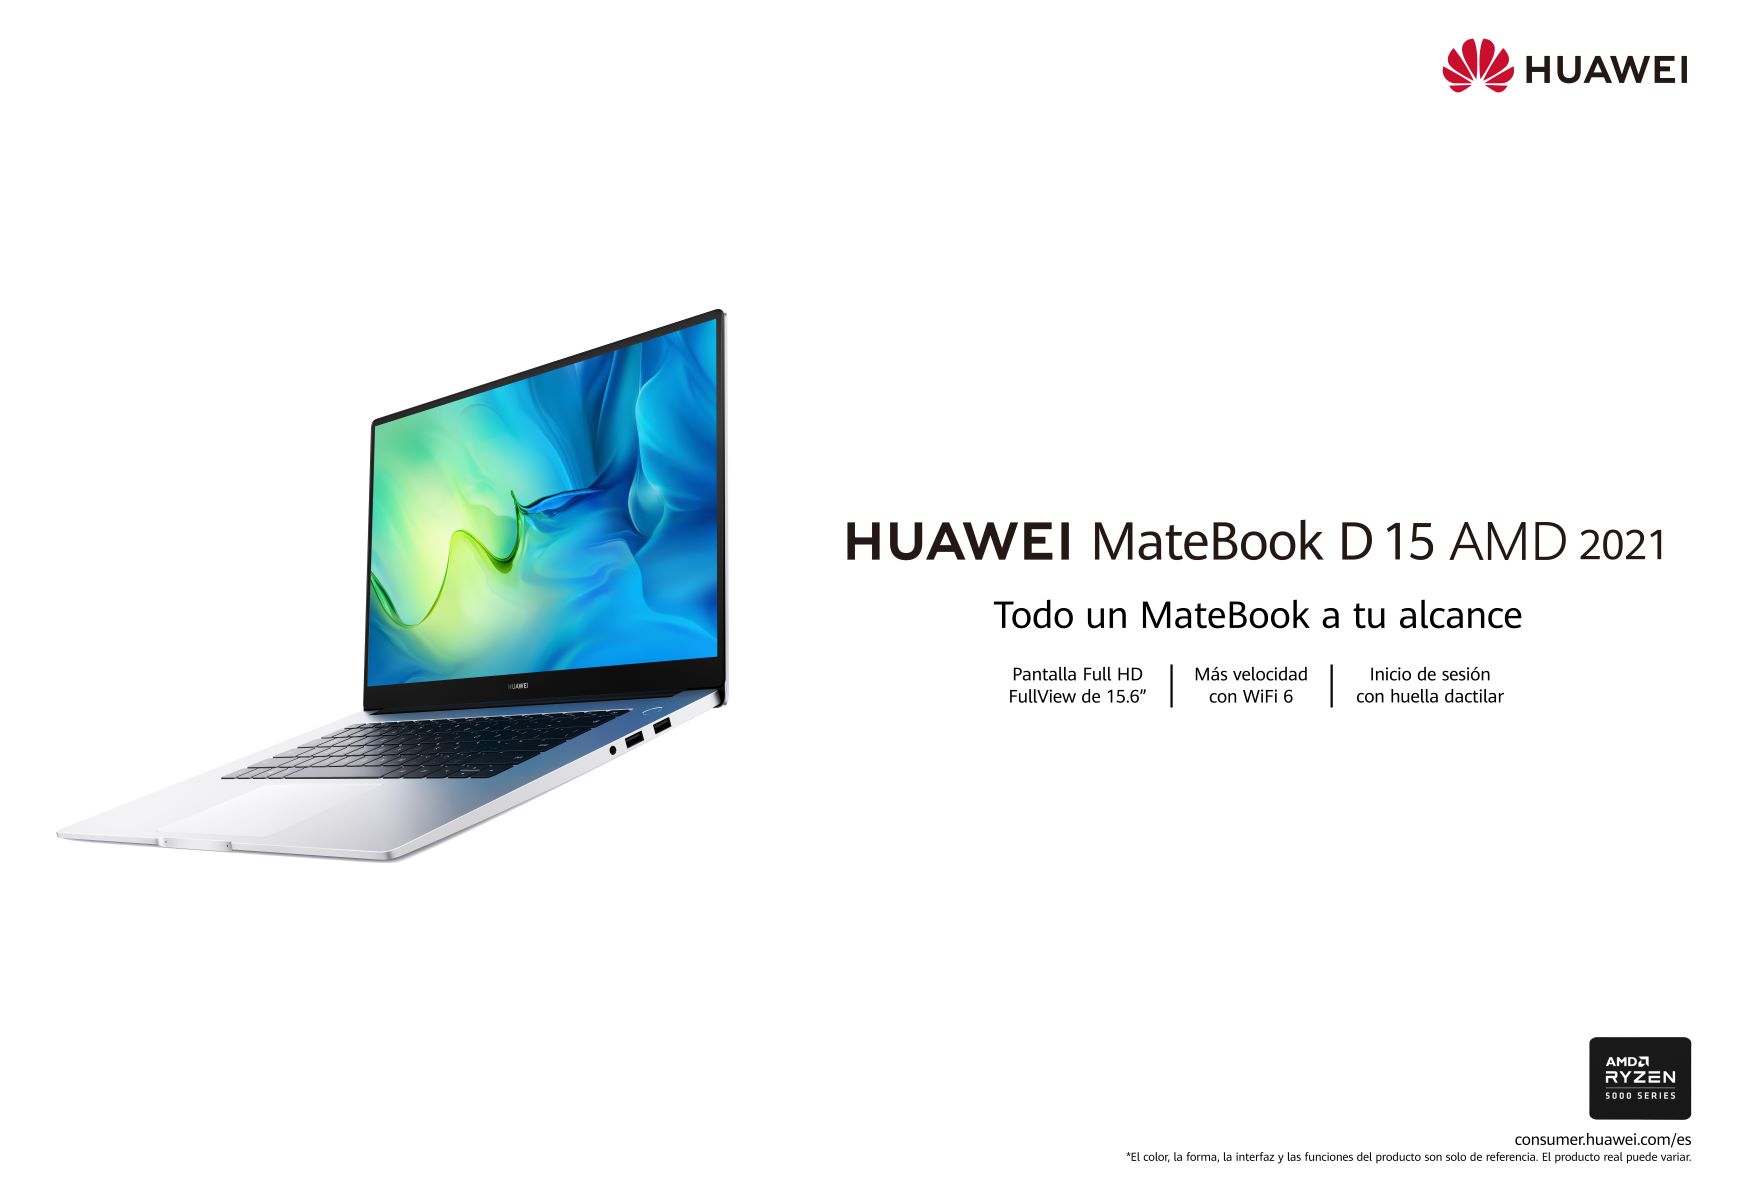 Huawei renueva el ligero todoterreno HUAWEI MateBook D 15 con los nuevos procesadores AMD Ryzen